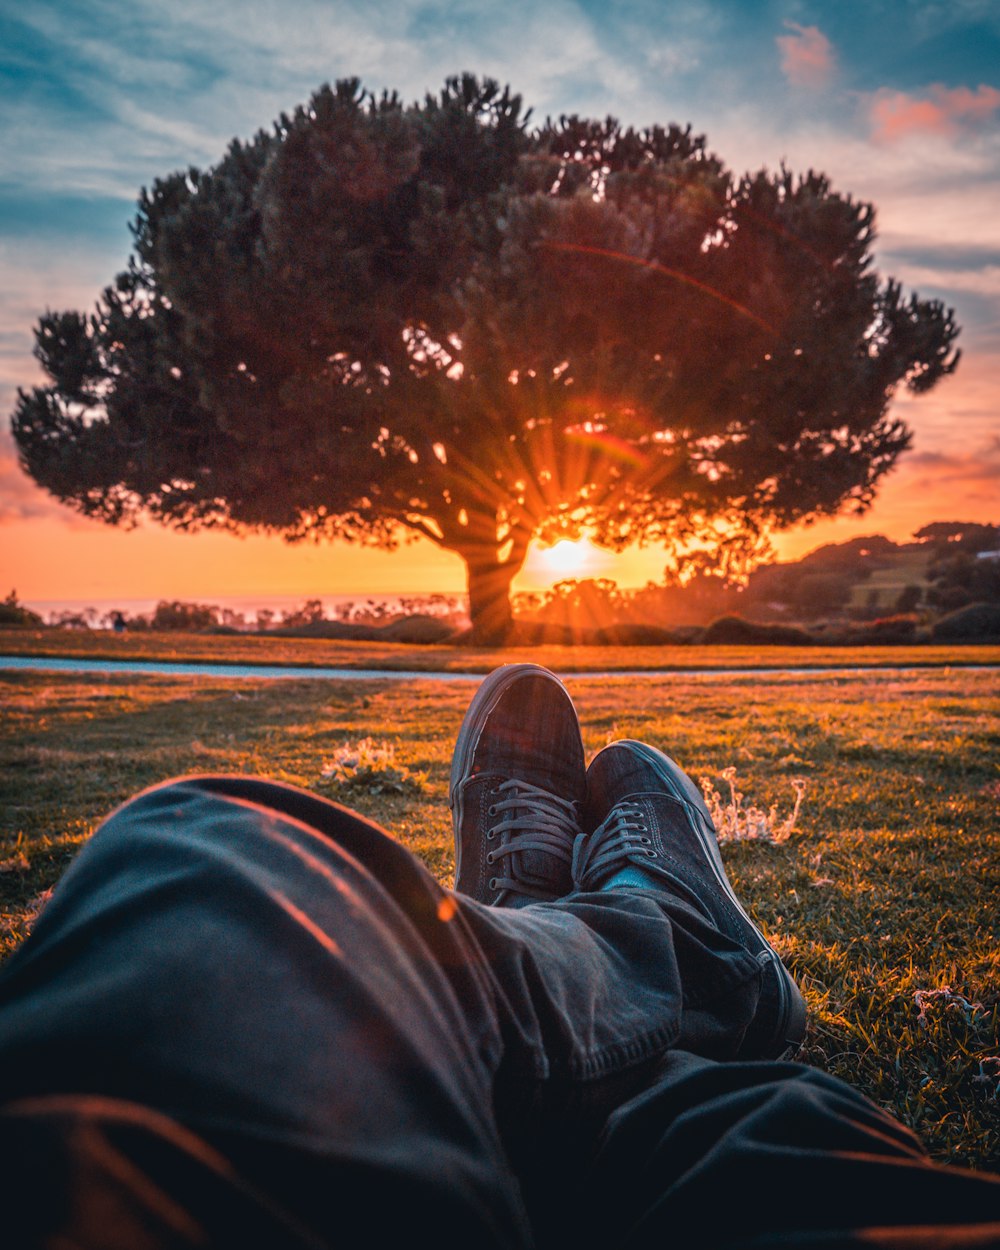 日没時に草原に座っている黒いズボンと茶色の靴を履いた人